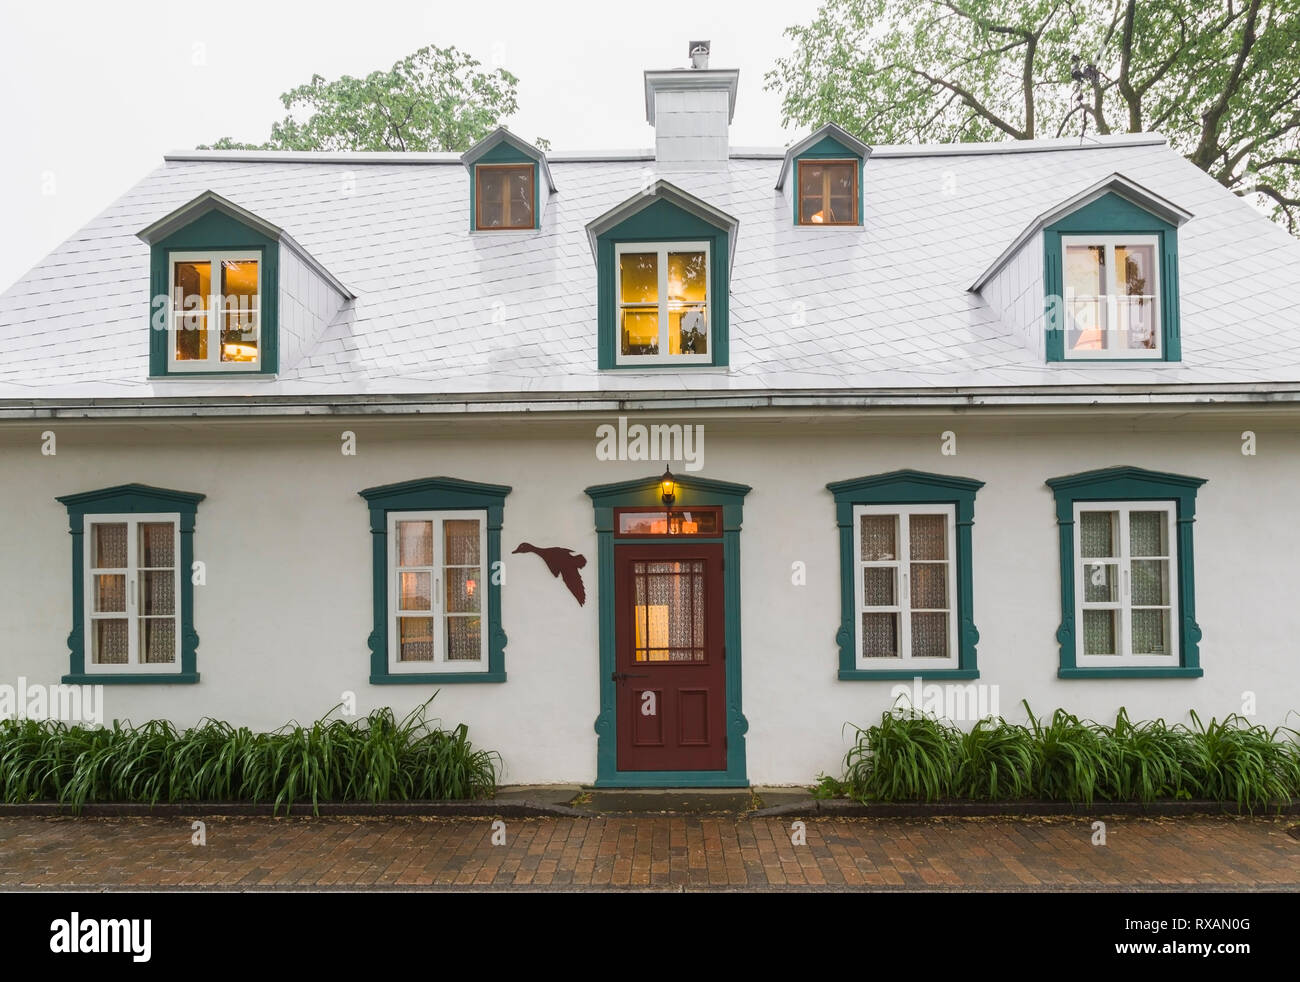 Beleuchtetes altes ca. 1805 weißes Raufußgemisch mit grünen und burgunderroten Zierleisten, Canadiana Cottage Stil Hausfassade im späten Frühjahr, Quebec, Kanada. Dieses Bild ist Eigentum freigegeben. CUPR0323 Stockfoto